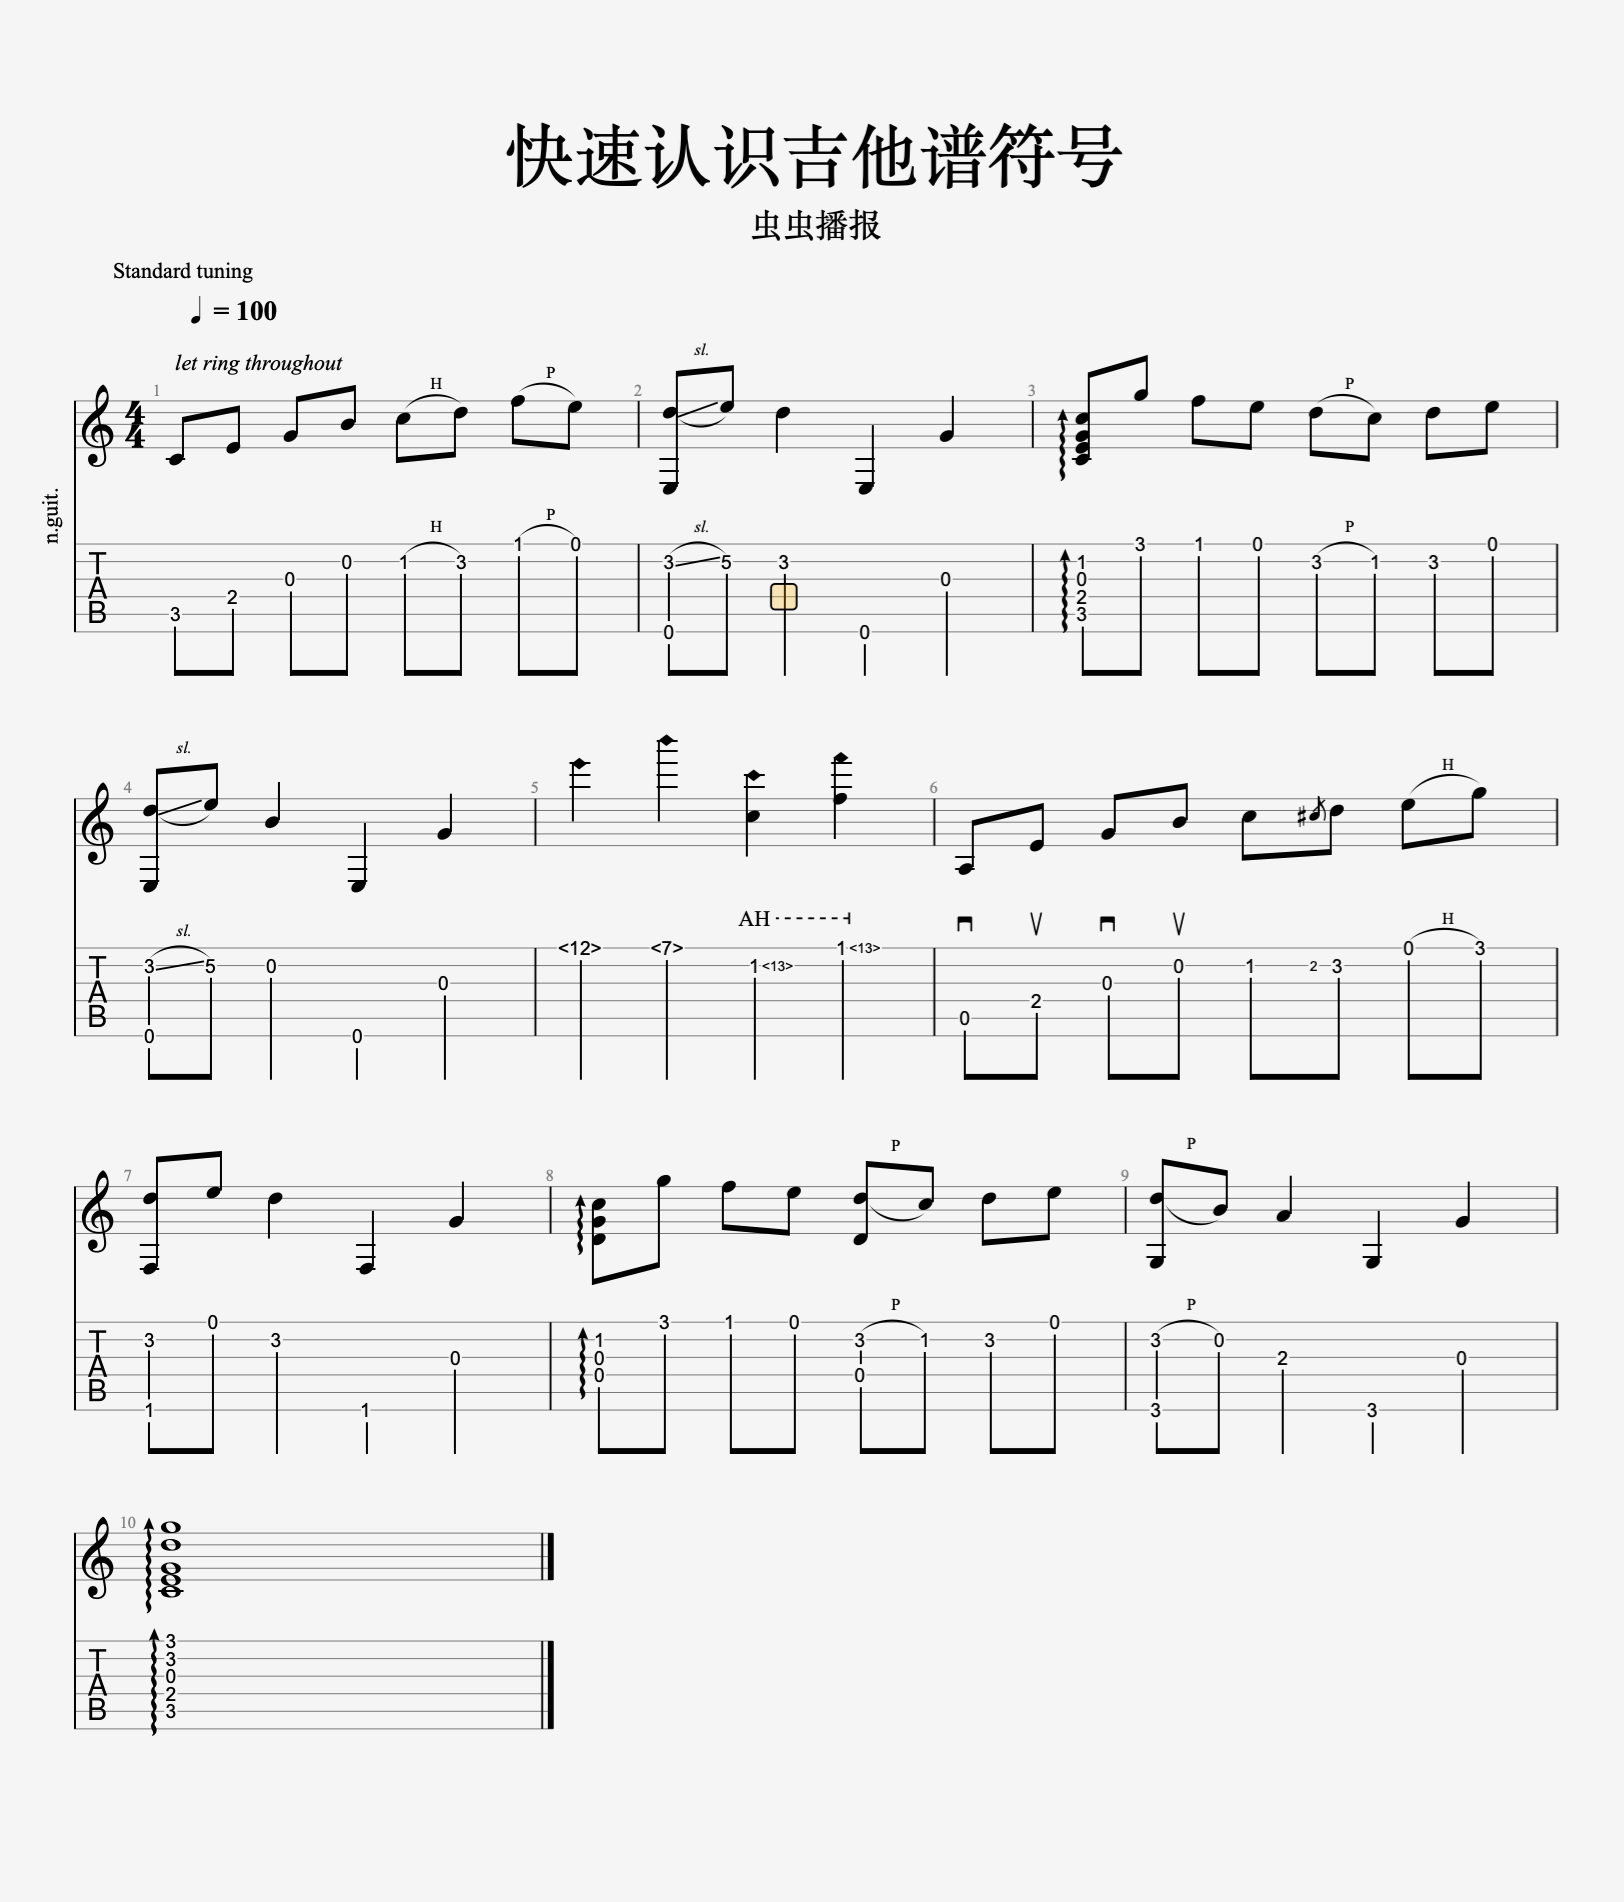 [图]一张图教你认识六线谱的标记符号 - 吉他谱怎么看 - 吉他之家